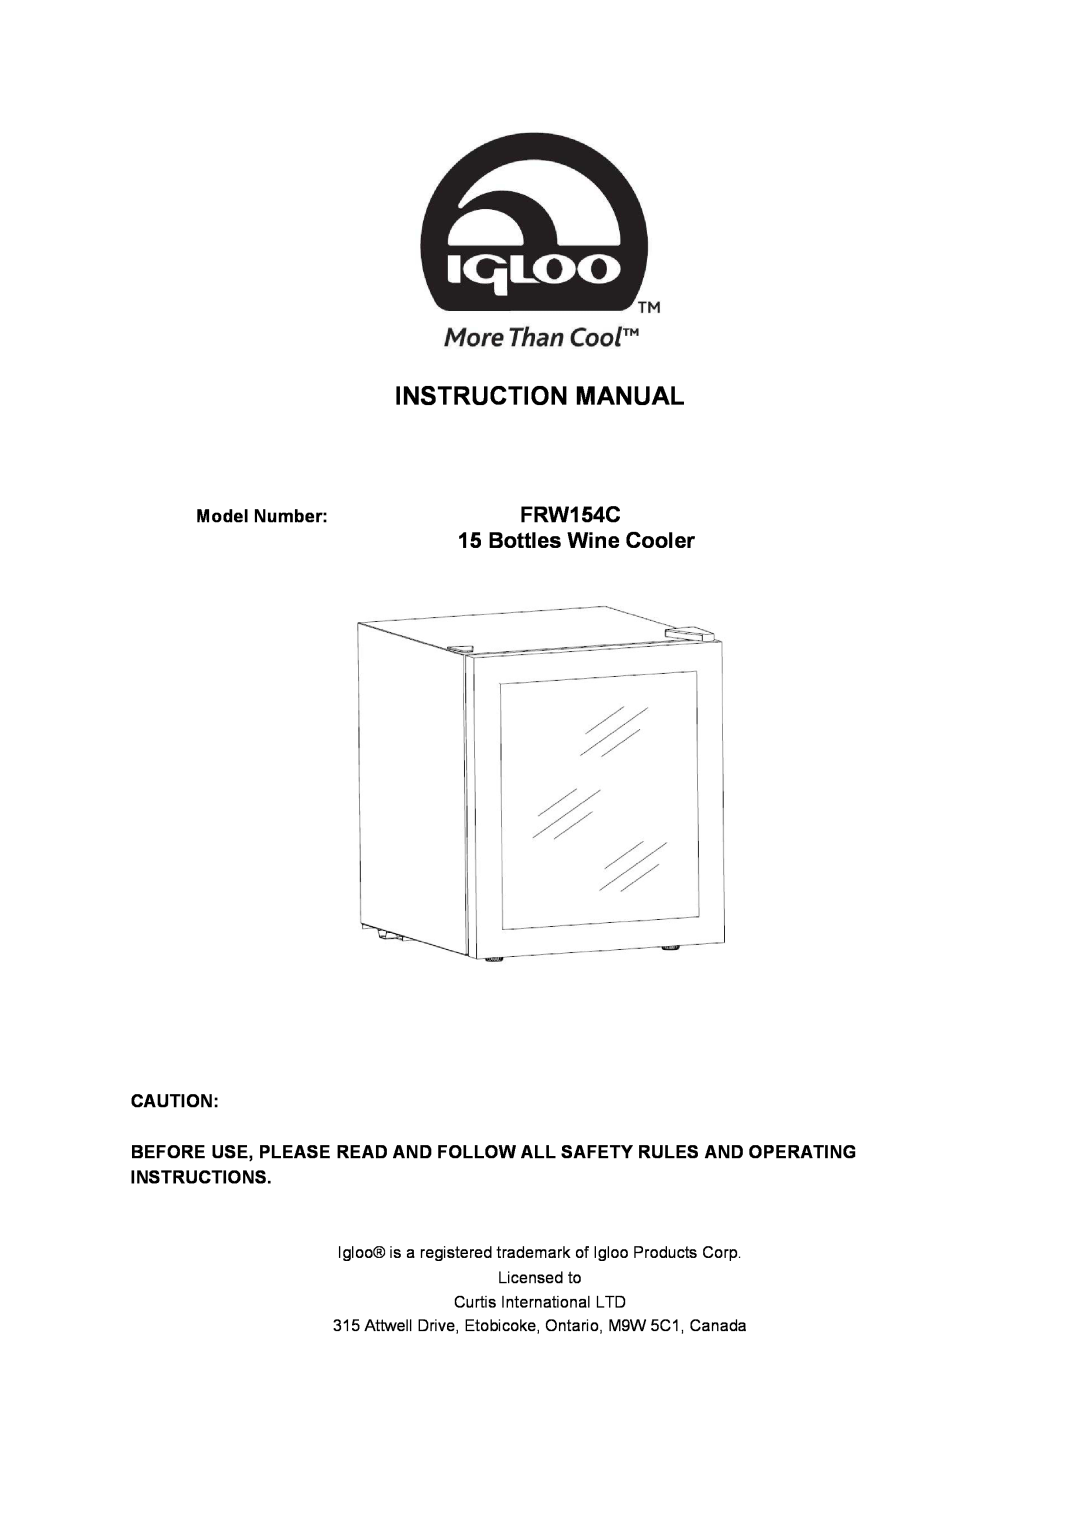 Igloo instruction manual FRW154C 15 Bottles Wine Cooler, Model Number 